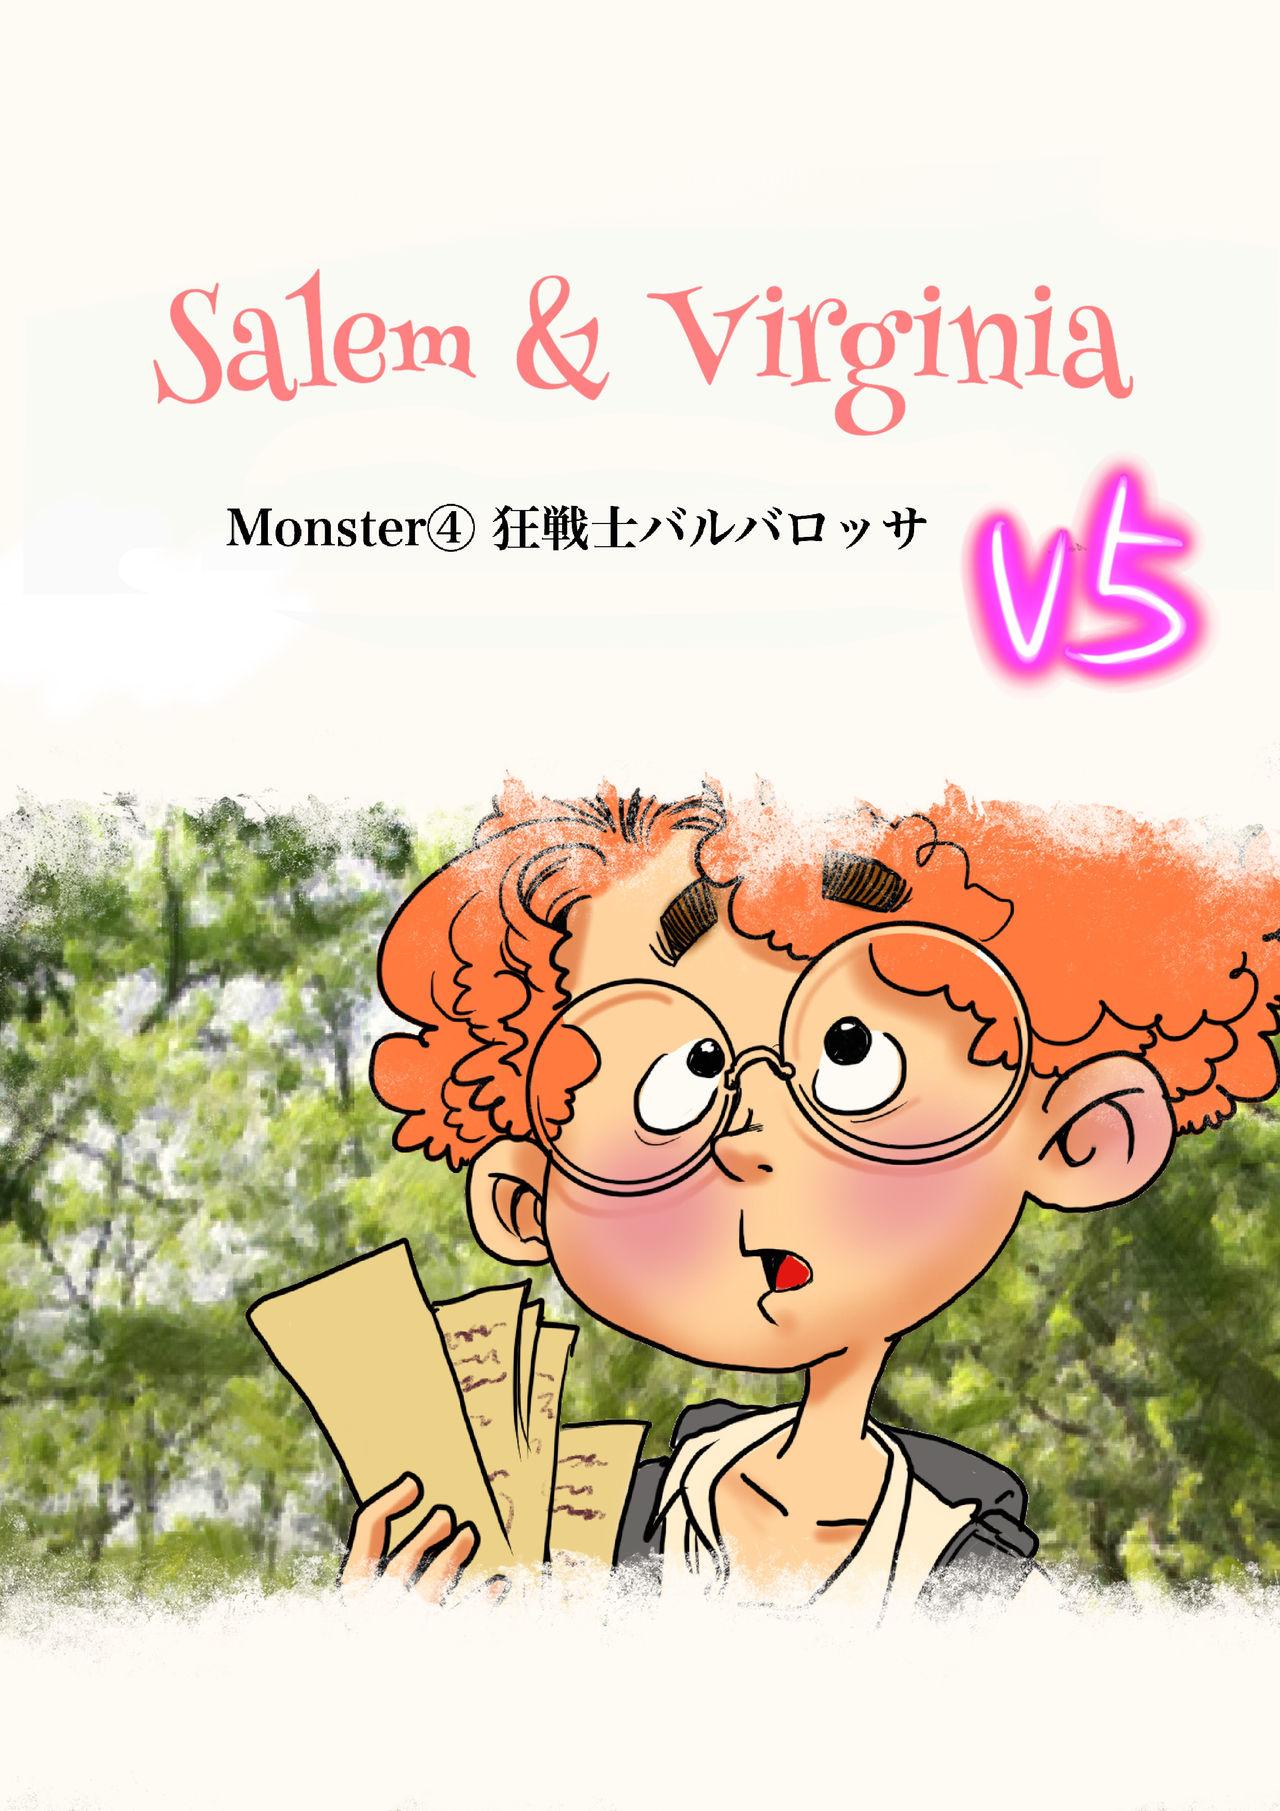 Salem & Virginia 106